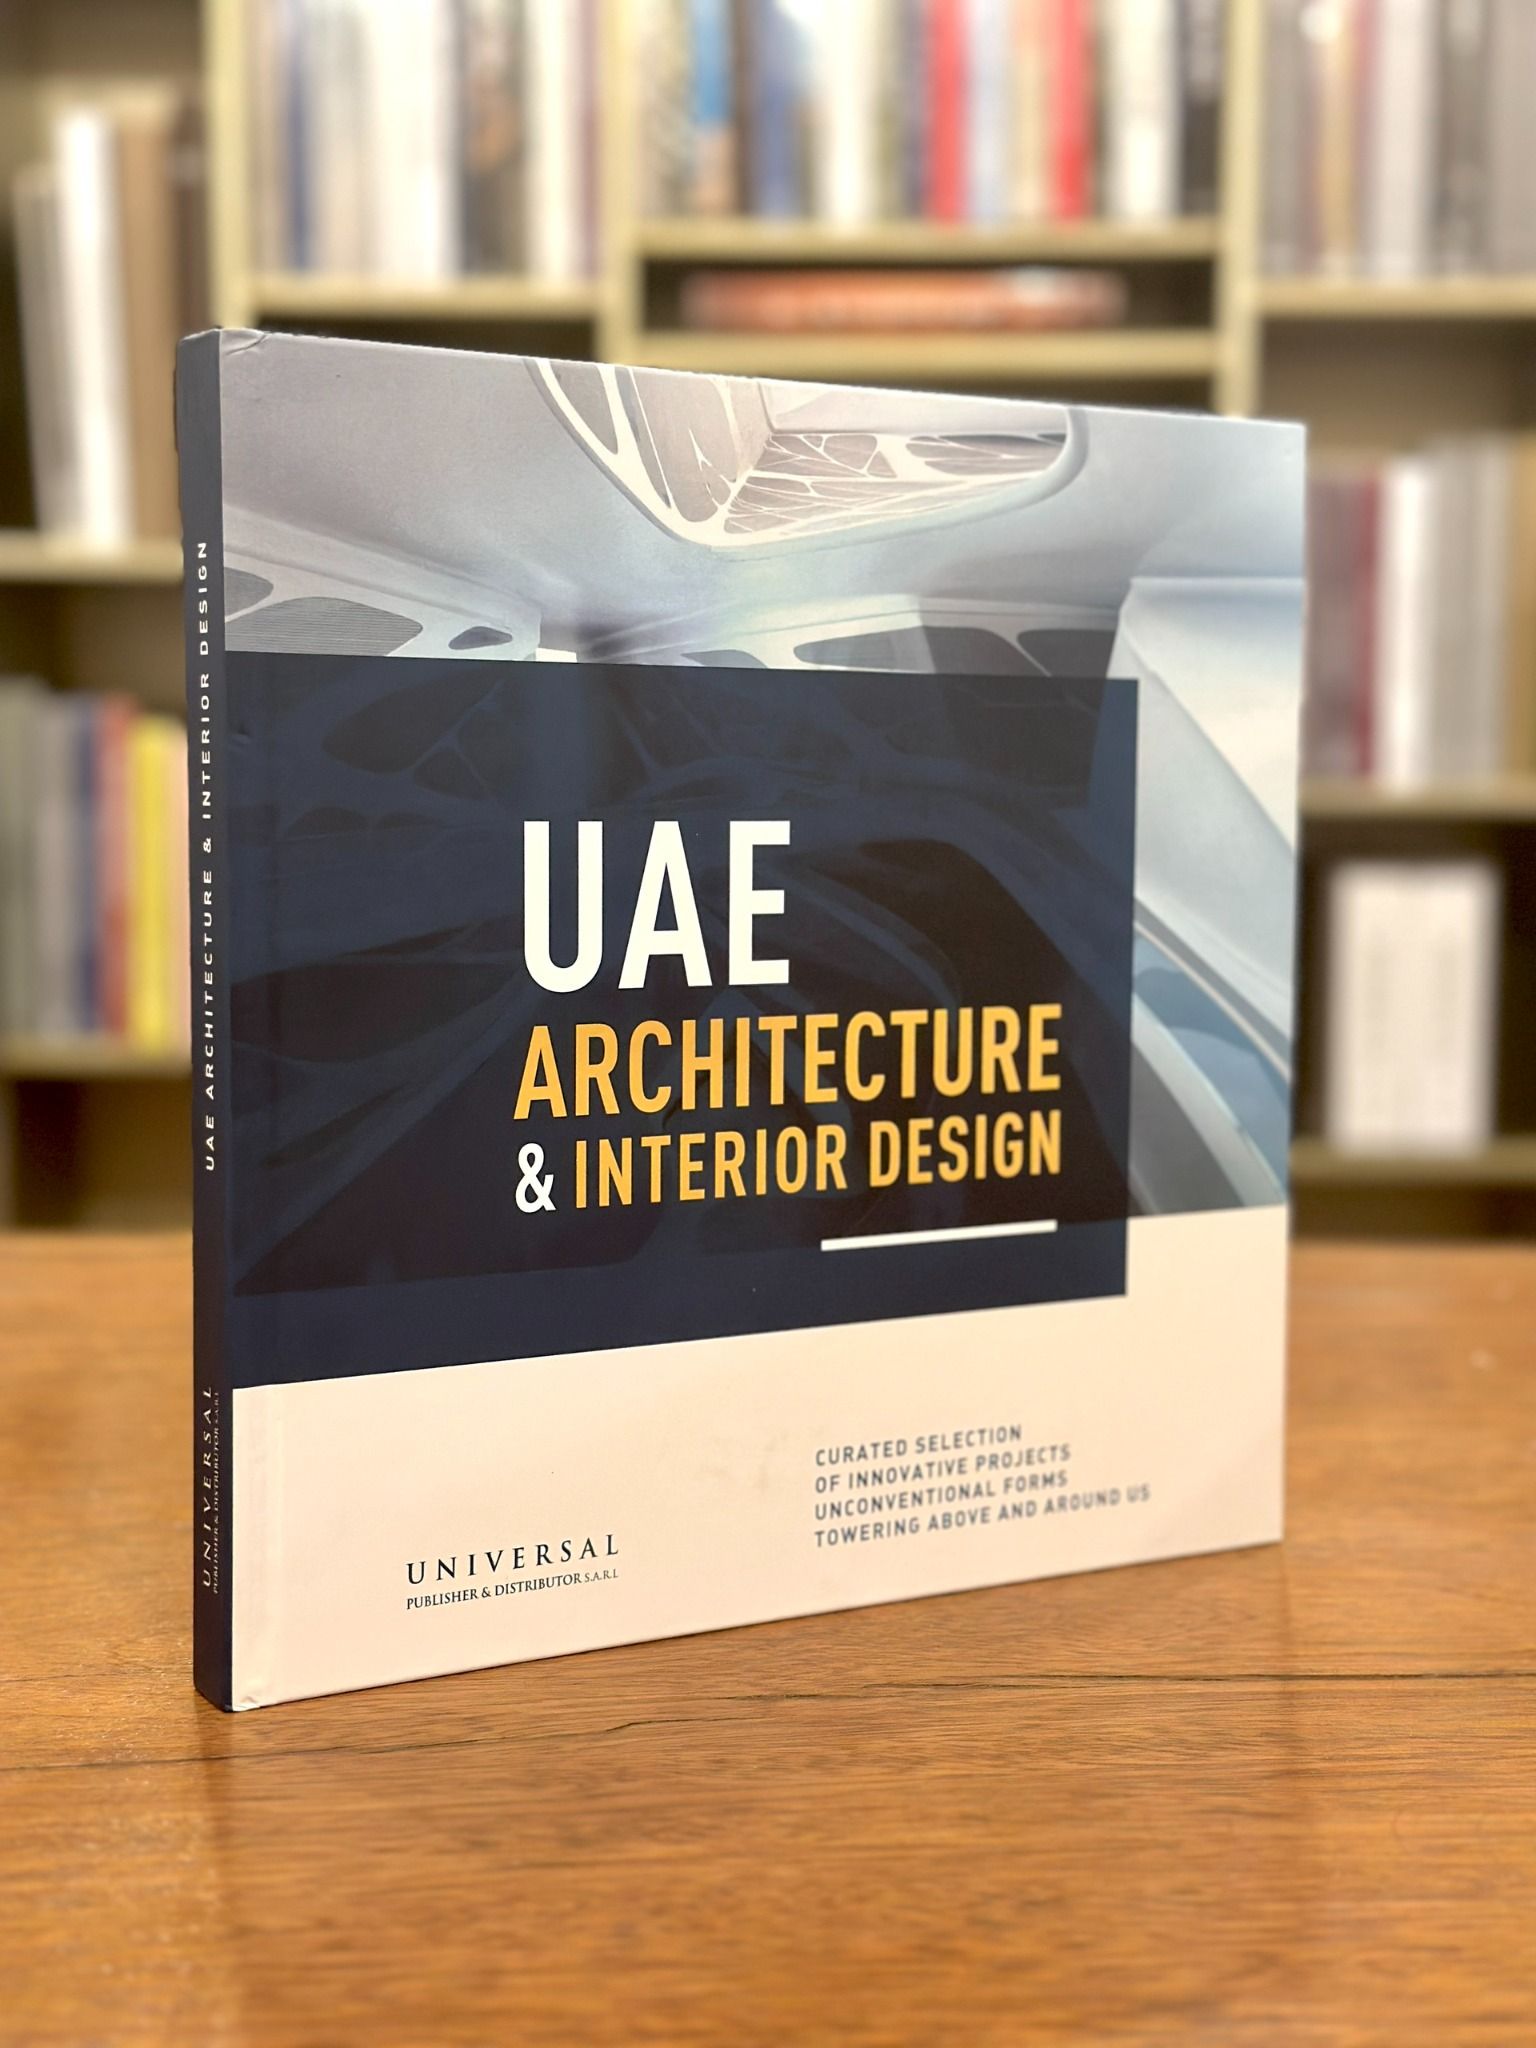  UAE Architecture & Interior Design 